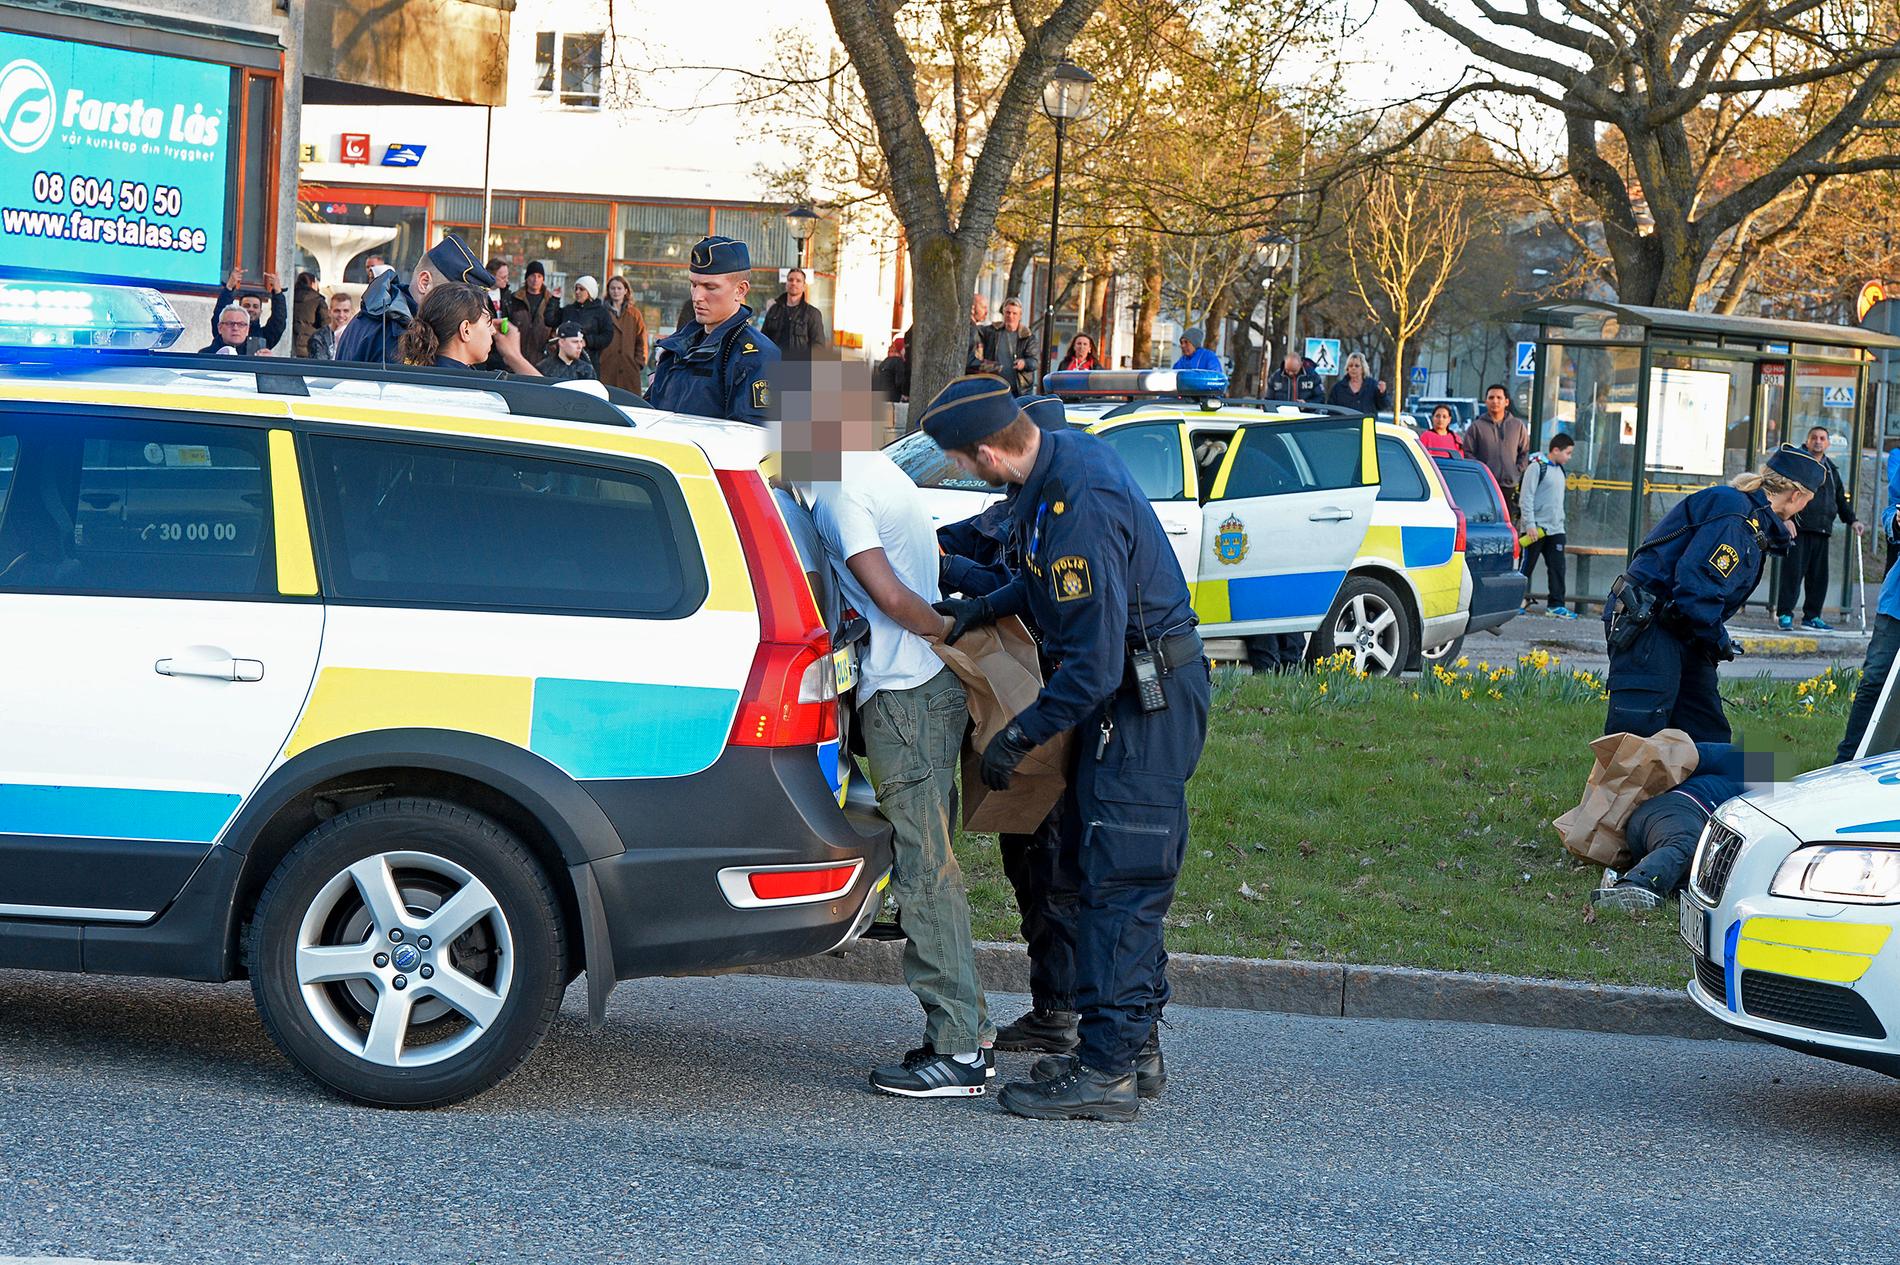 Fyra personer grips av polis efter skjutning i Hässelby Gård.